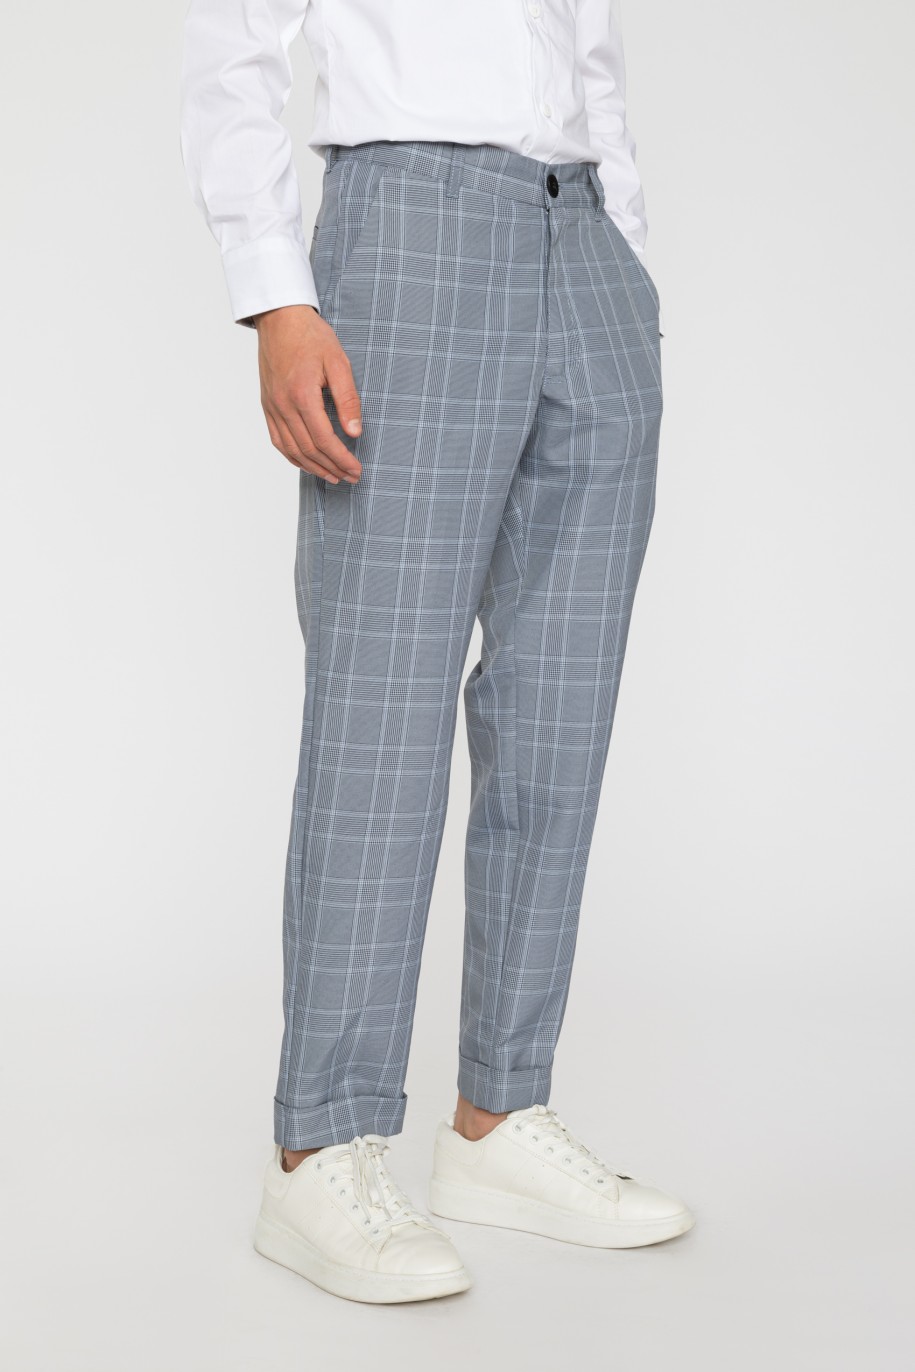 Eleganckie spodnie garniturowe w kratę dla chłopaka - 33592